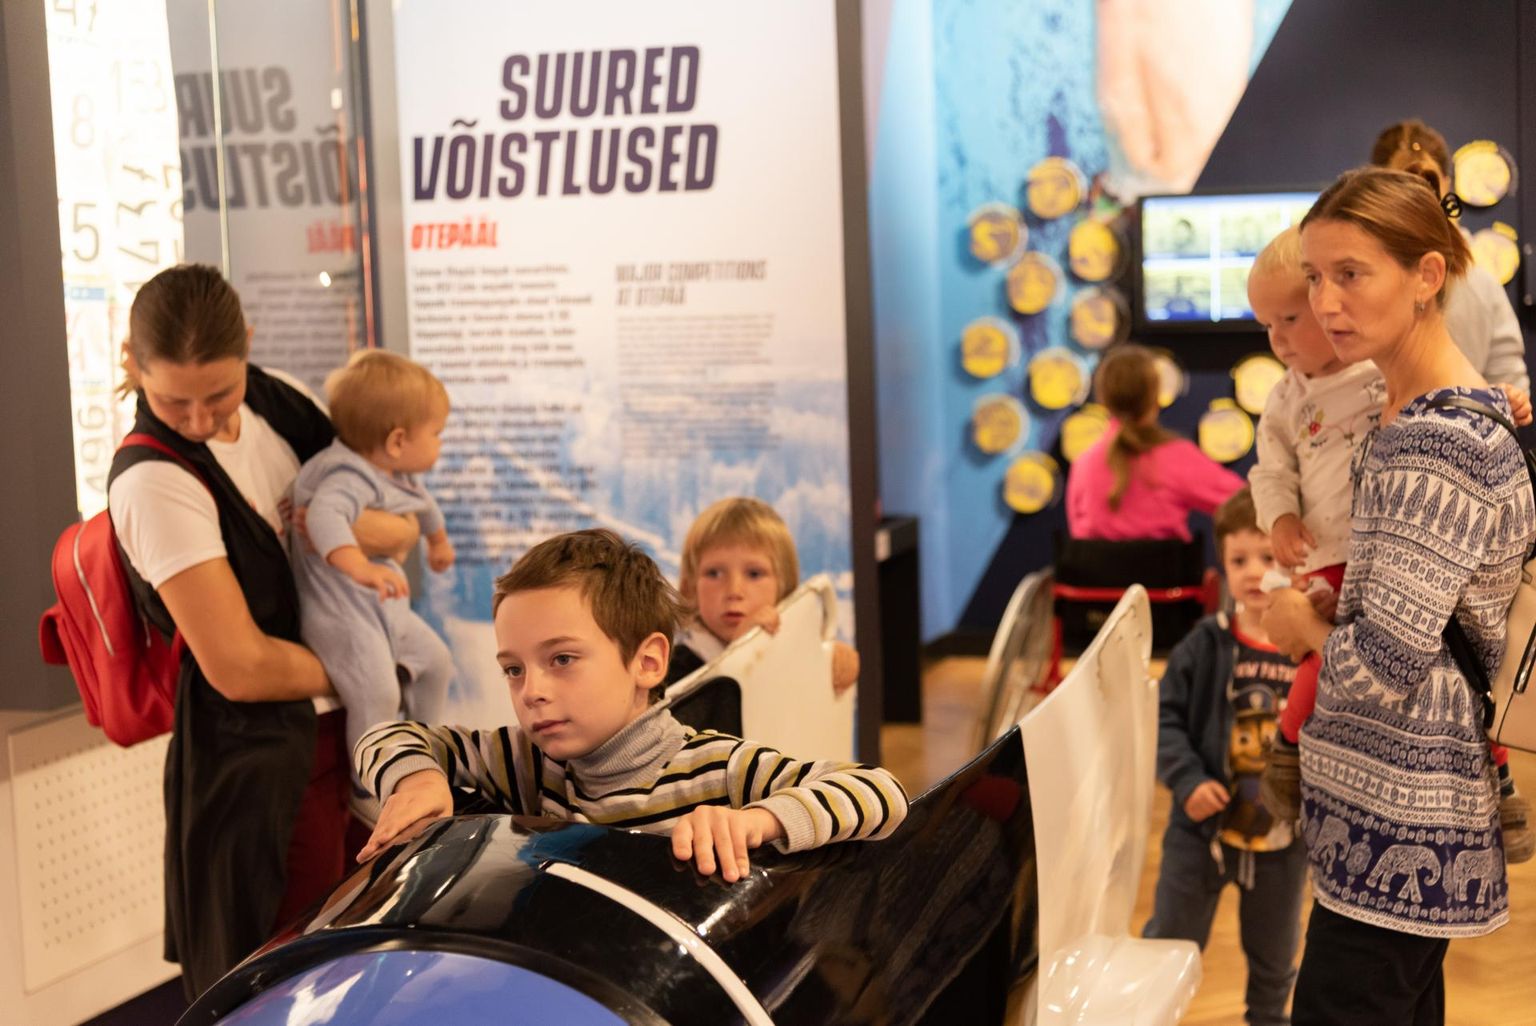 Spordimuuseumis said nii välis- kui ka Eesti pered pered kolme kahetunnise kohtumise vältel tutvuda üksteise spordilooga ja end sportlikes tegevustes proovile panna, alates köieronimisest kuni ekstreemspordialadeni välja.